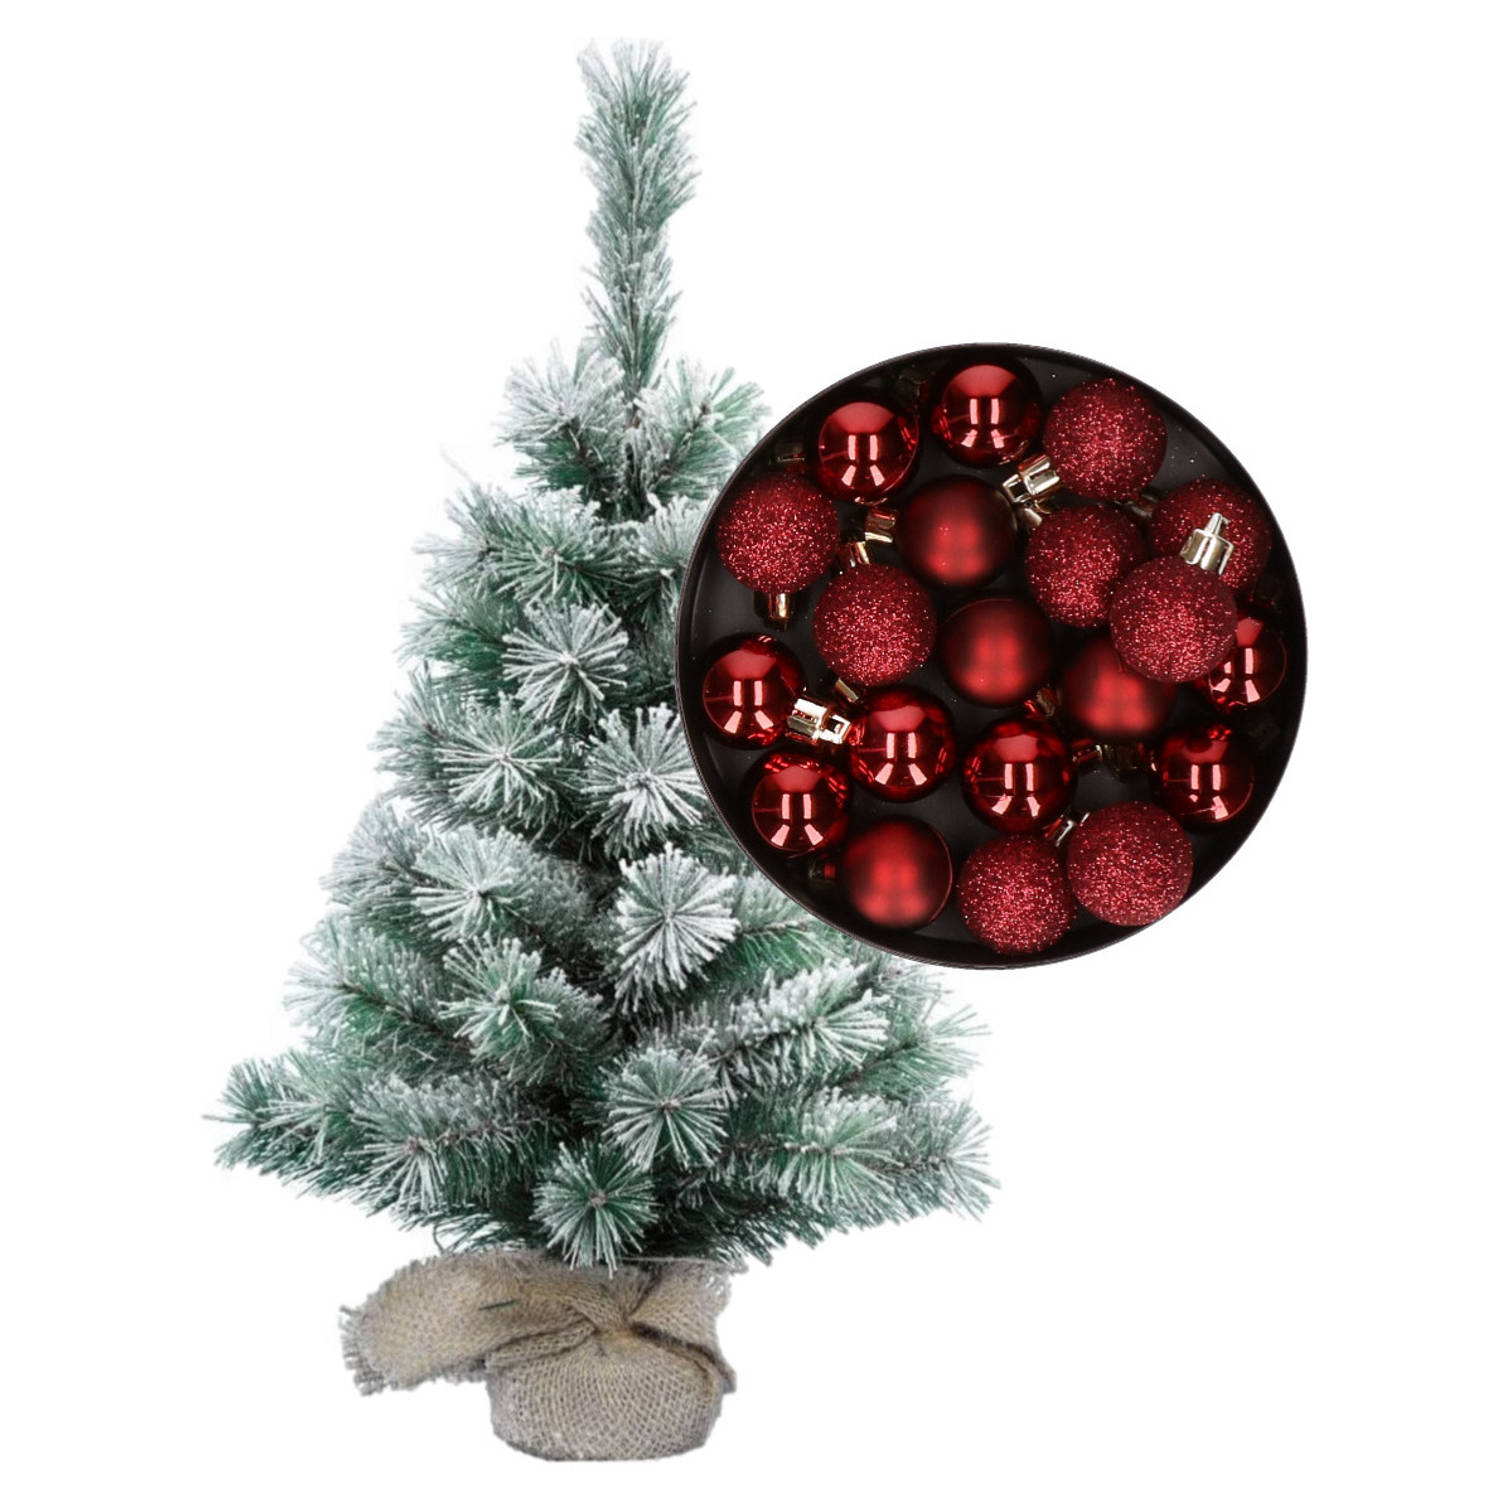 Besneeuwde mini kerstboom-kunst kerstboom 35 cm met kerstballen donkerrood Kunstkerstboom